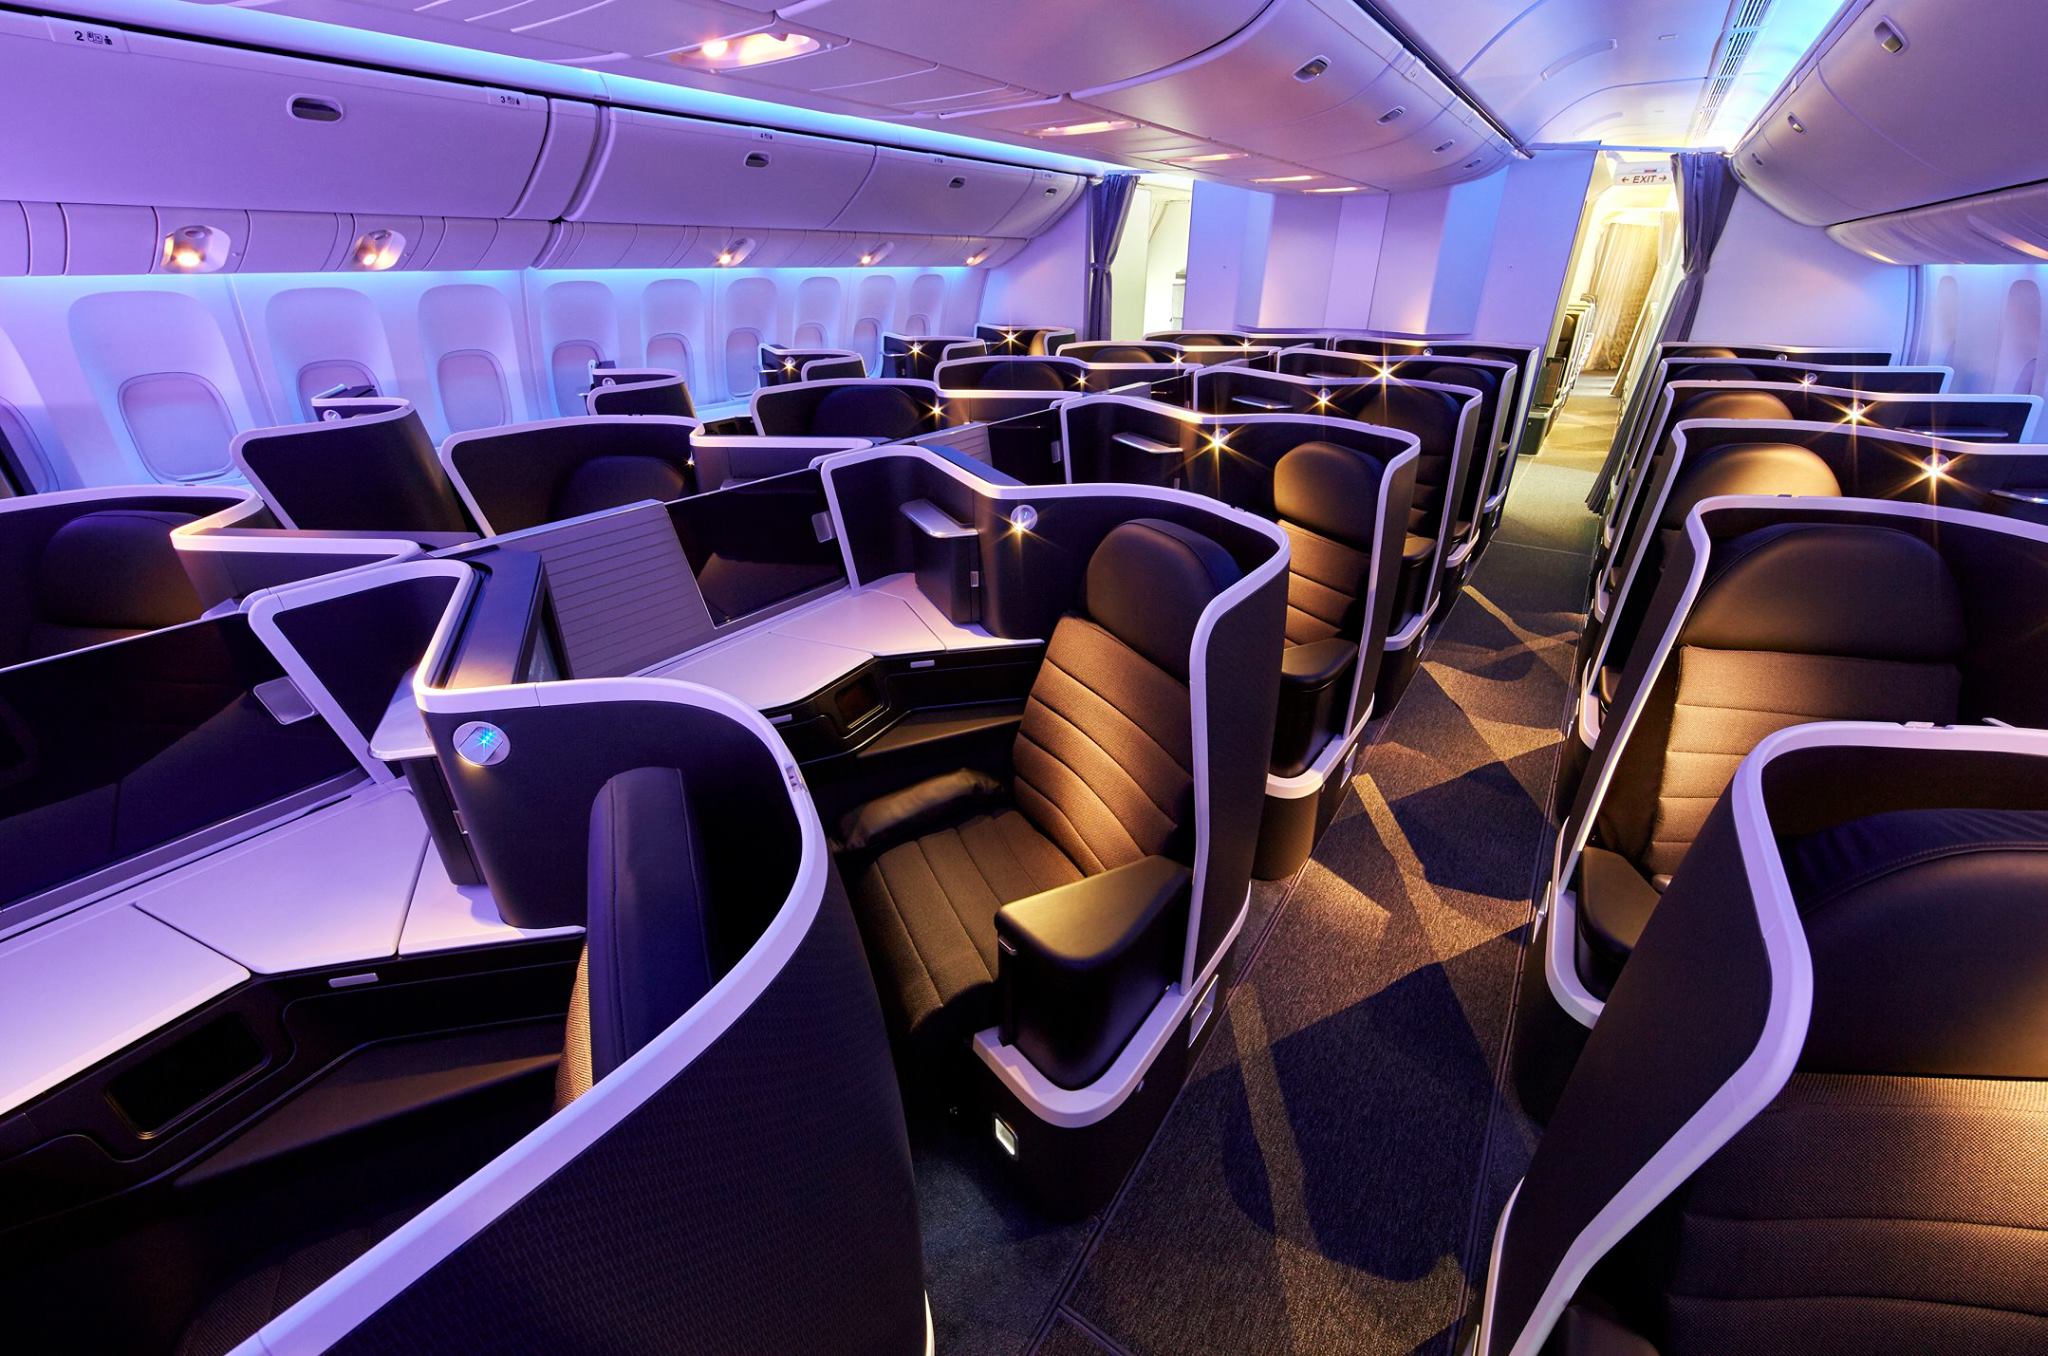 Virgin Australia "The Business" Business Class cabin